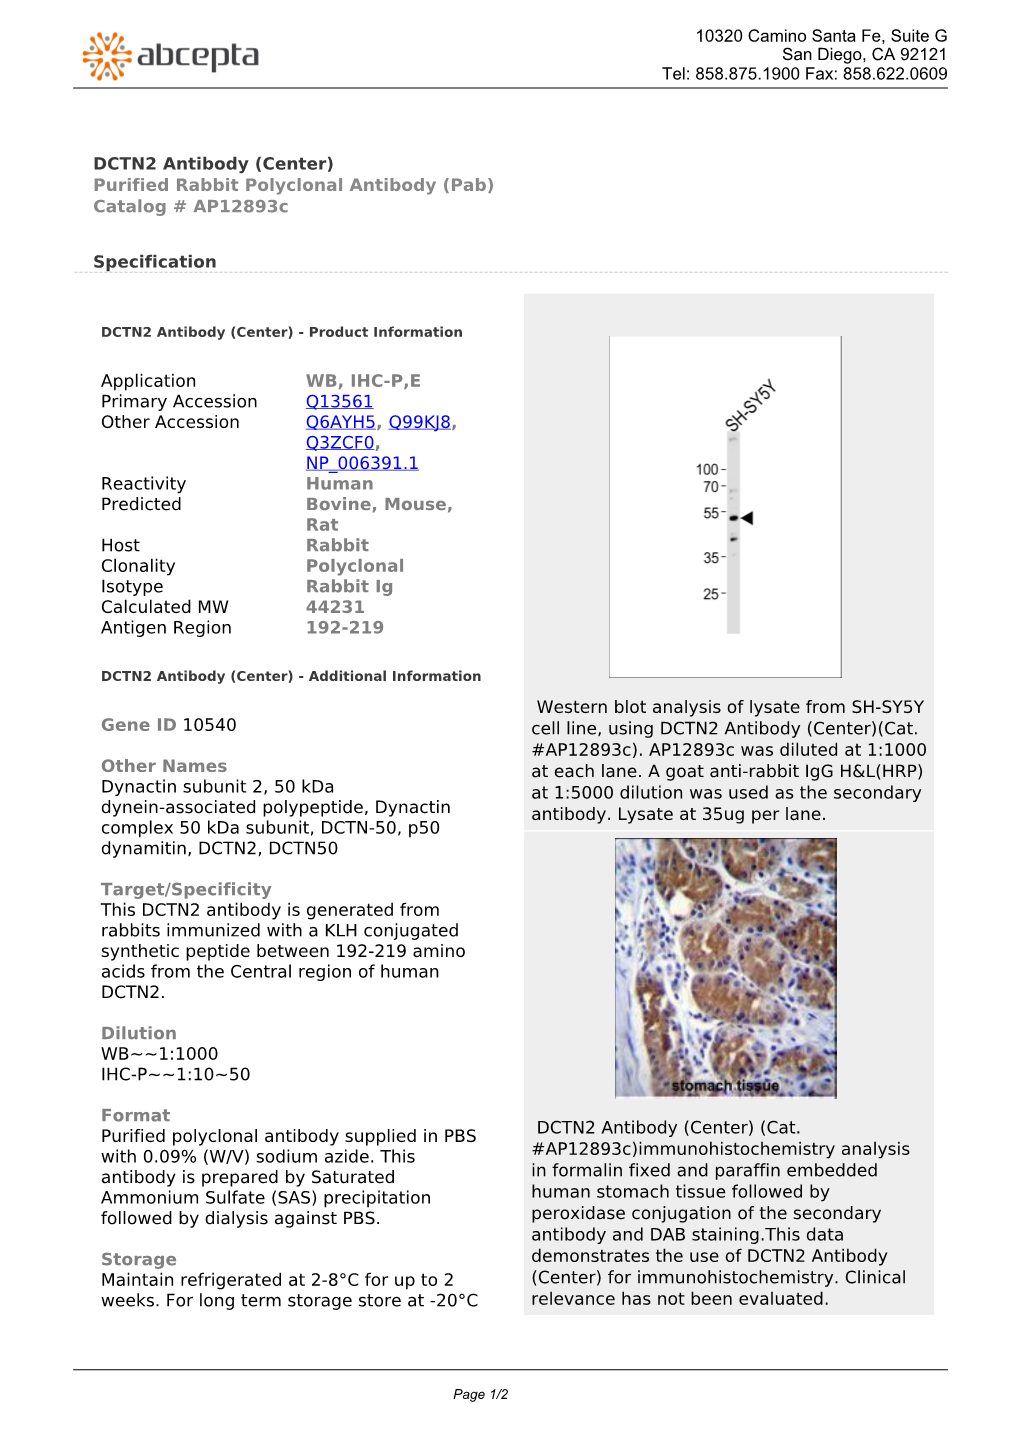 DCTN2 Antibody (Center) Purified Rabbit Polyclonal Antibody (Pab) Catalog # Ap12893c